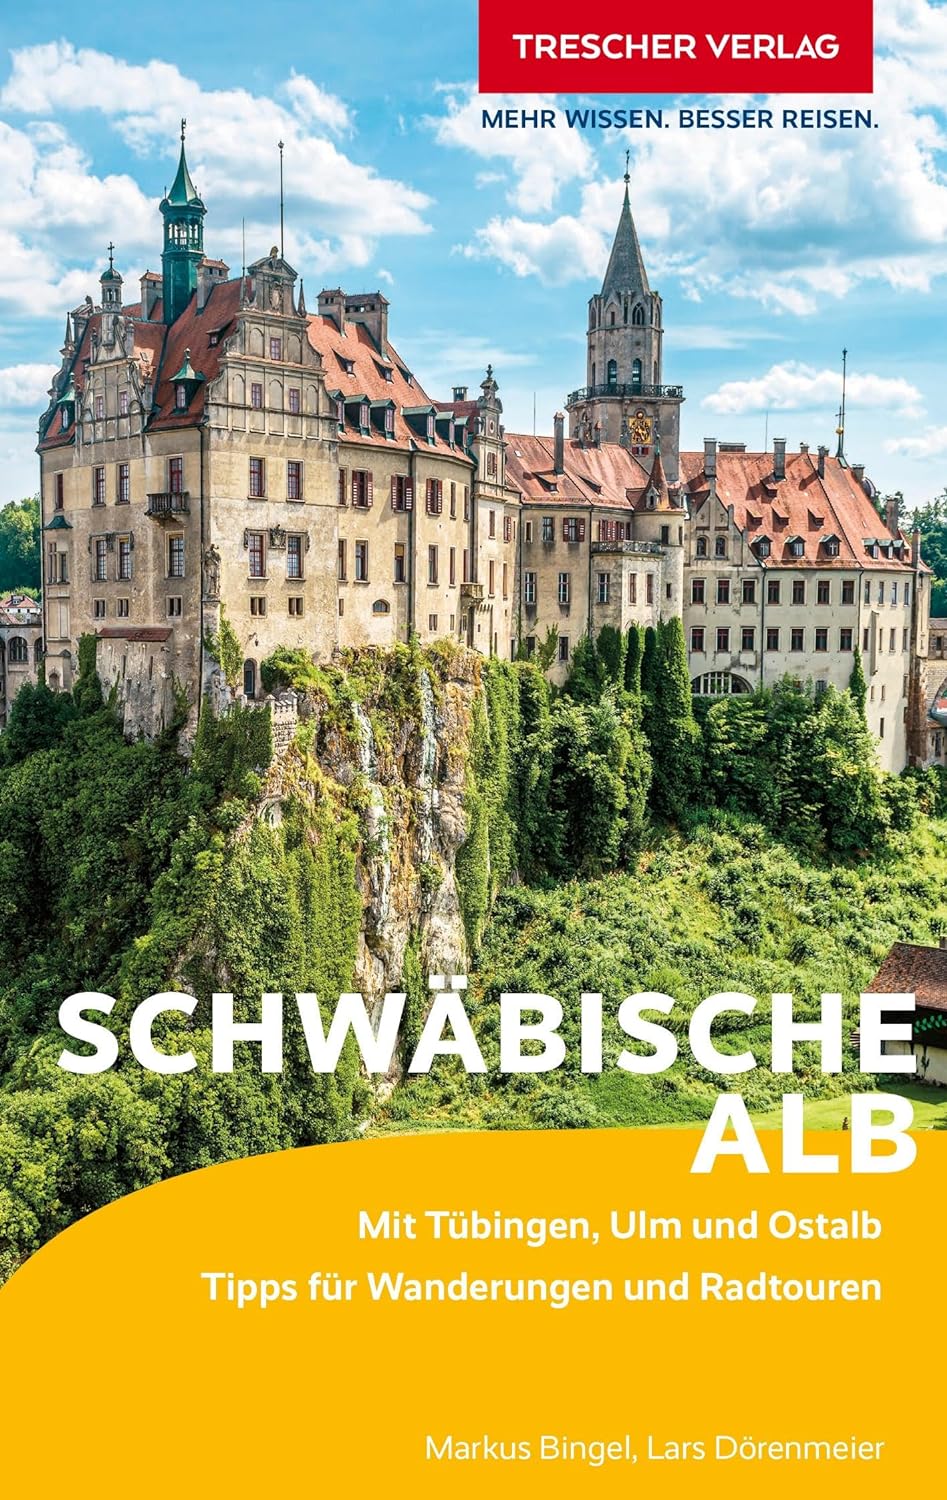 Online bestellen: Reisgids Reiseführer Schwäbische Alb | Trescher Verlag